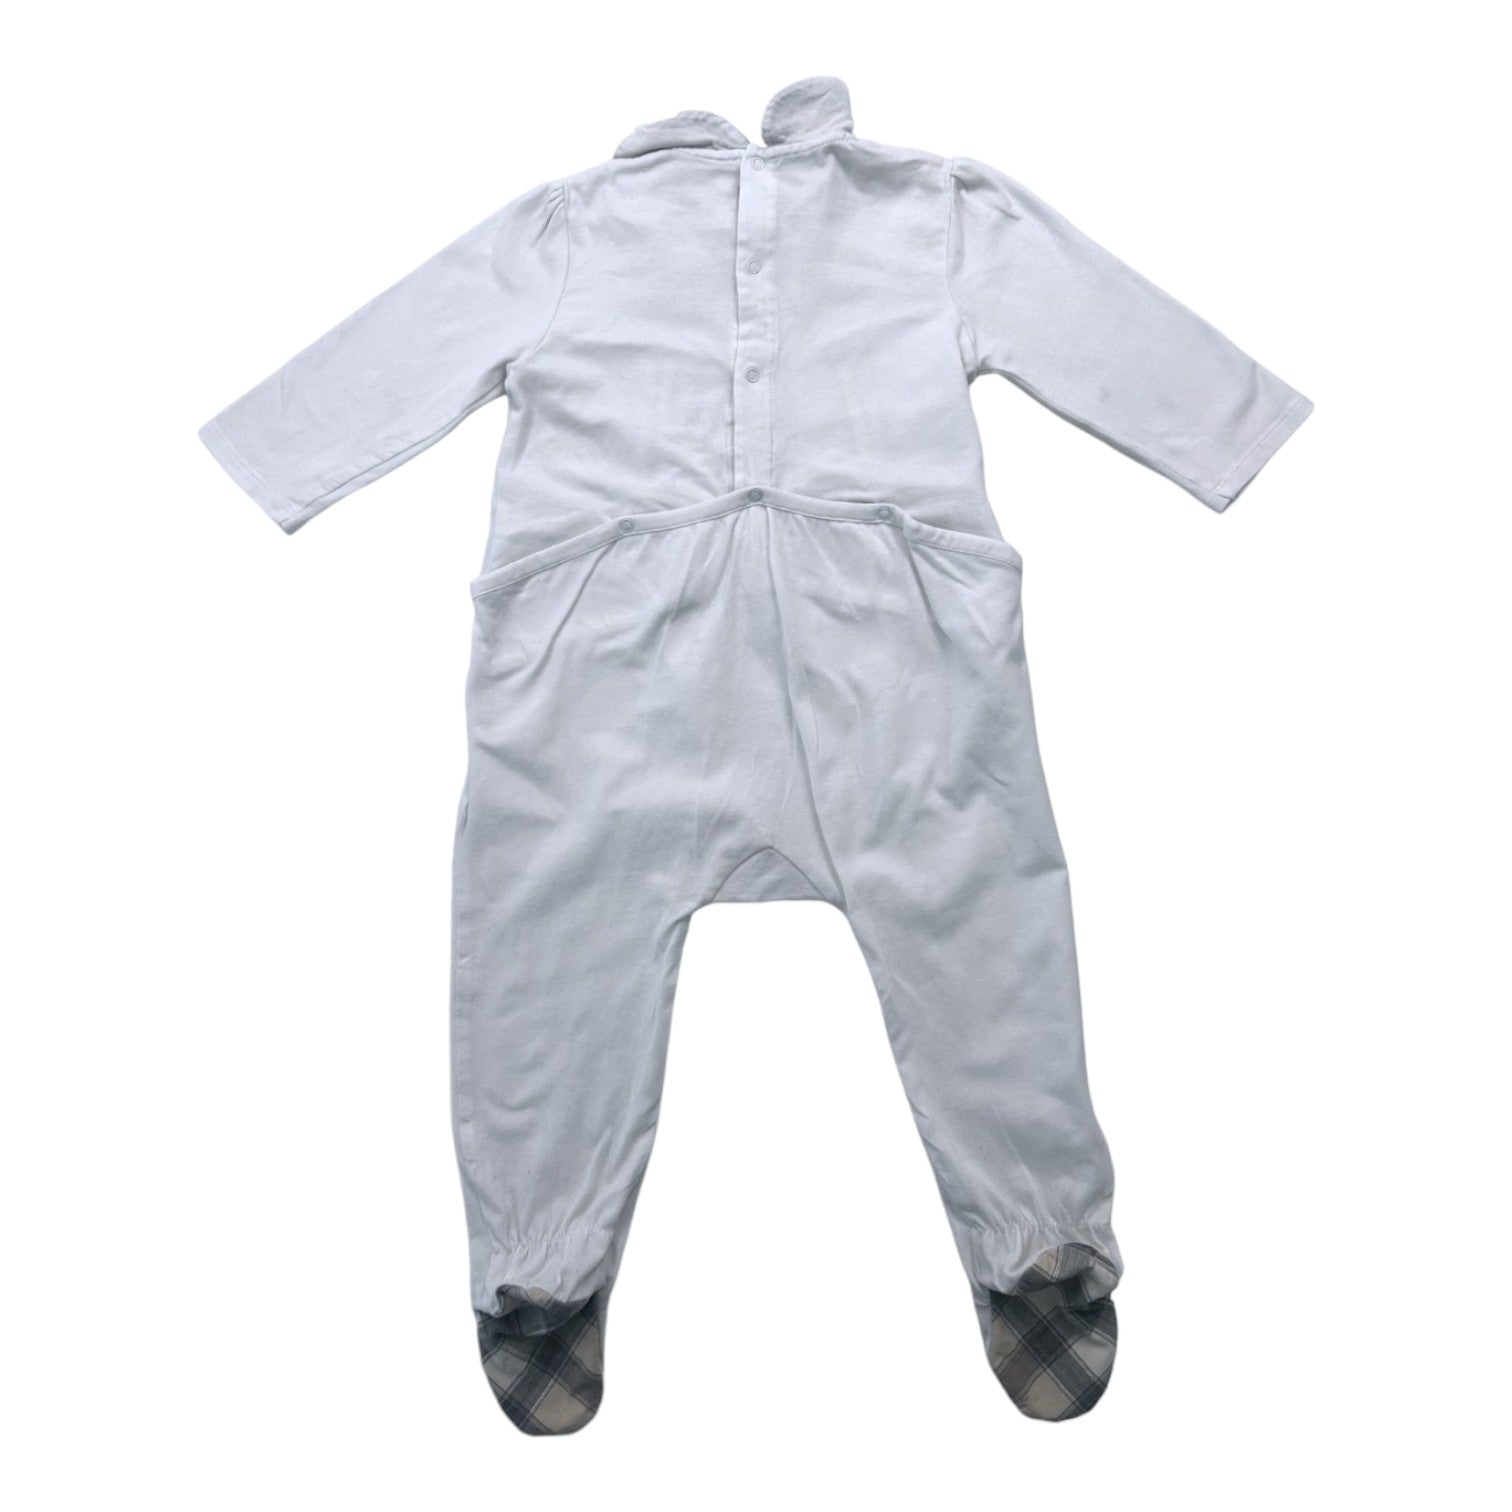 BURBERRY - Pyjama blanc à détails - 12 mois